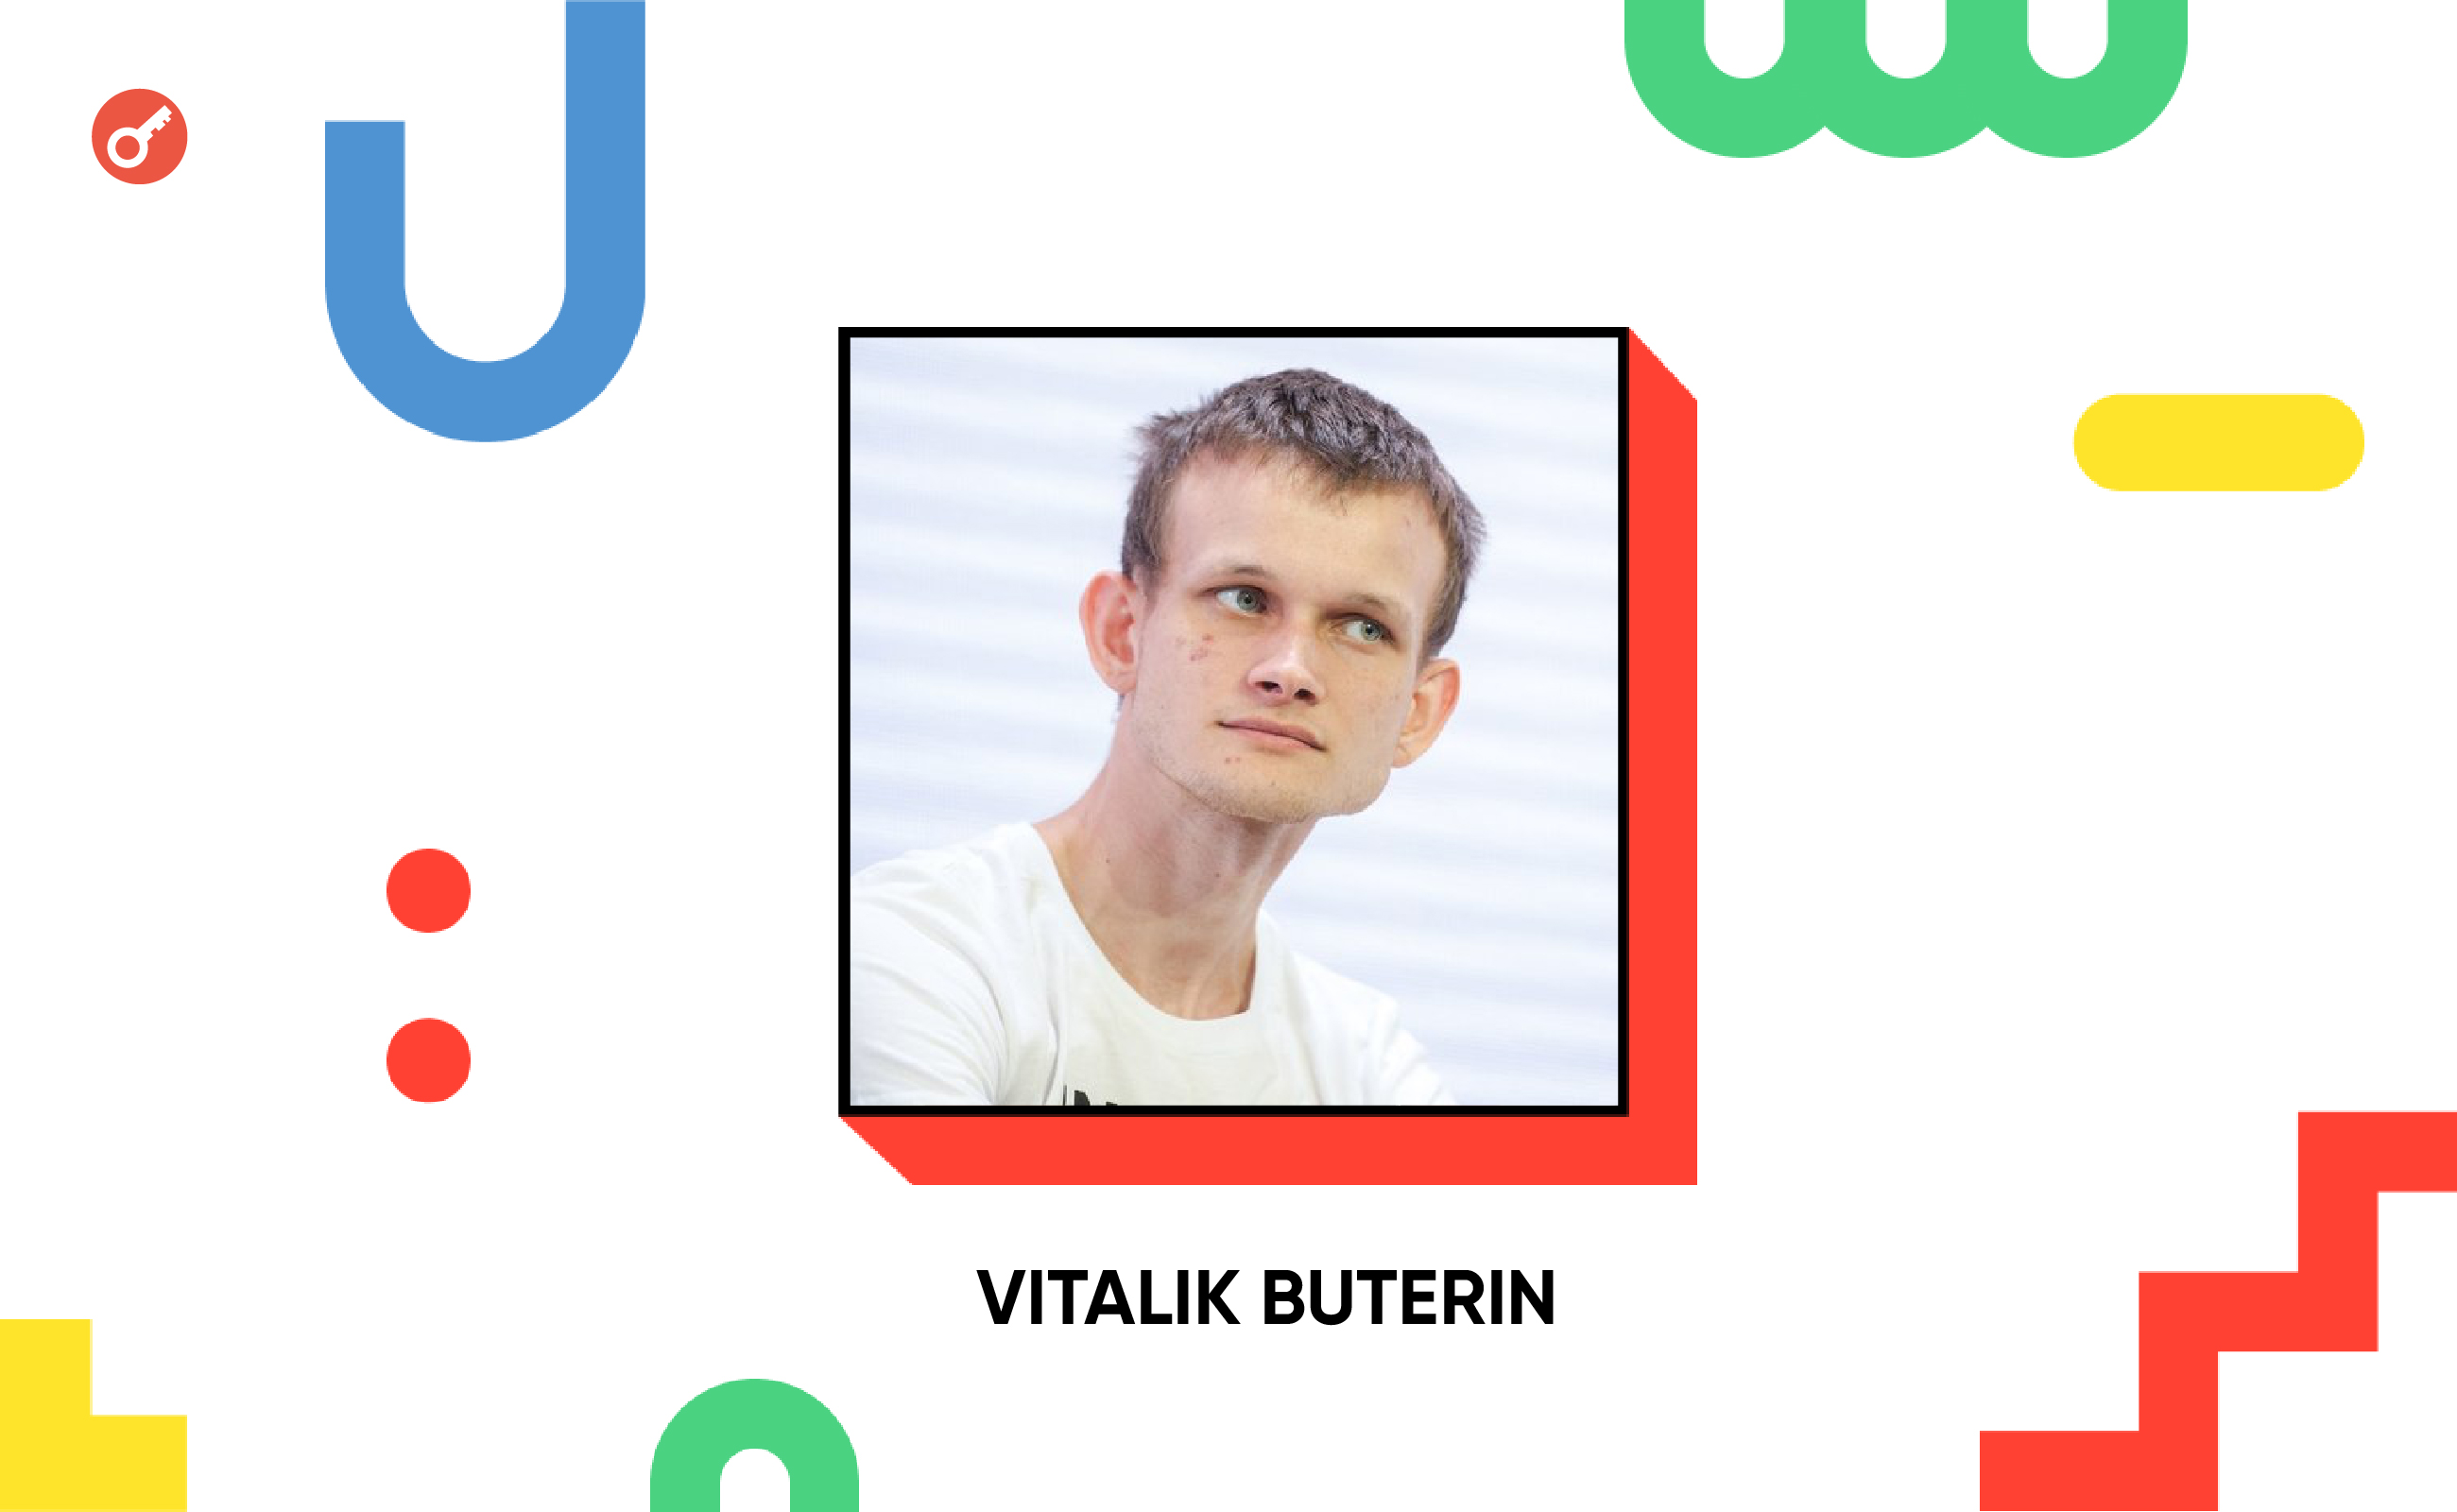 IC’2024: Виталик Бутерин подписал флаг Украины и получил NFT-кота с автографом Зеленского  . Заглавный коллаж новости.